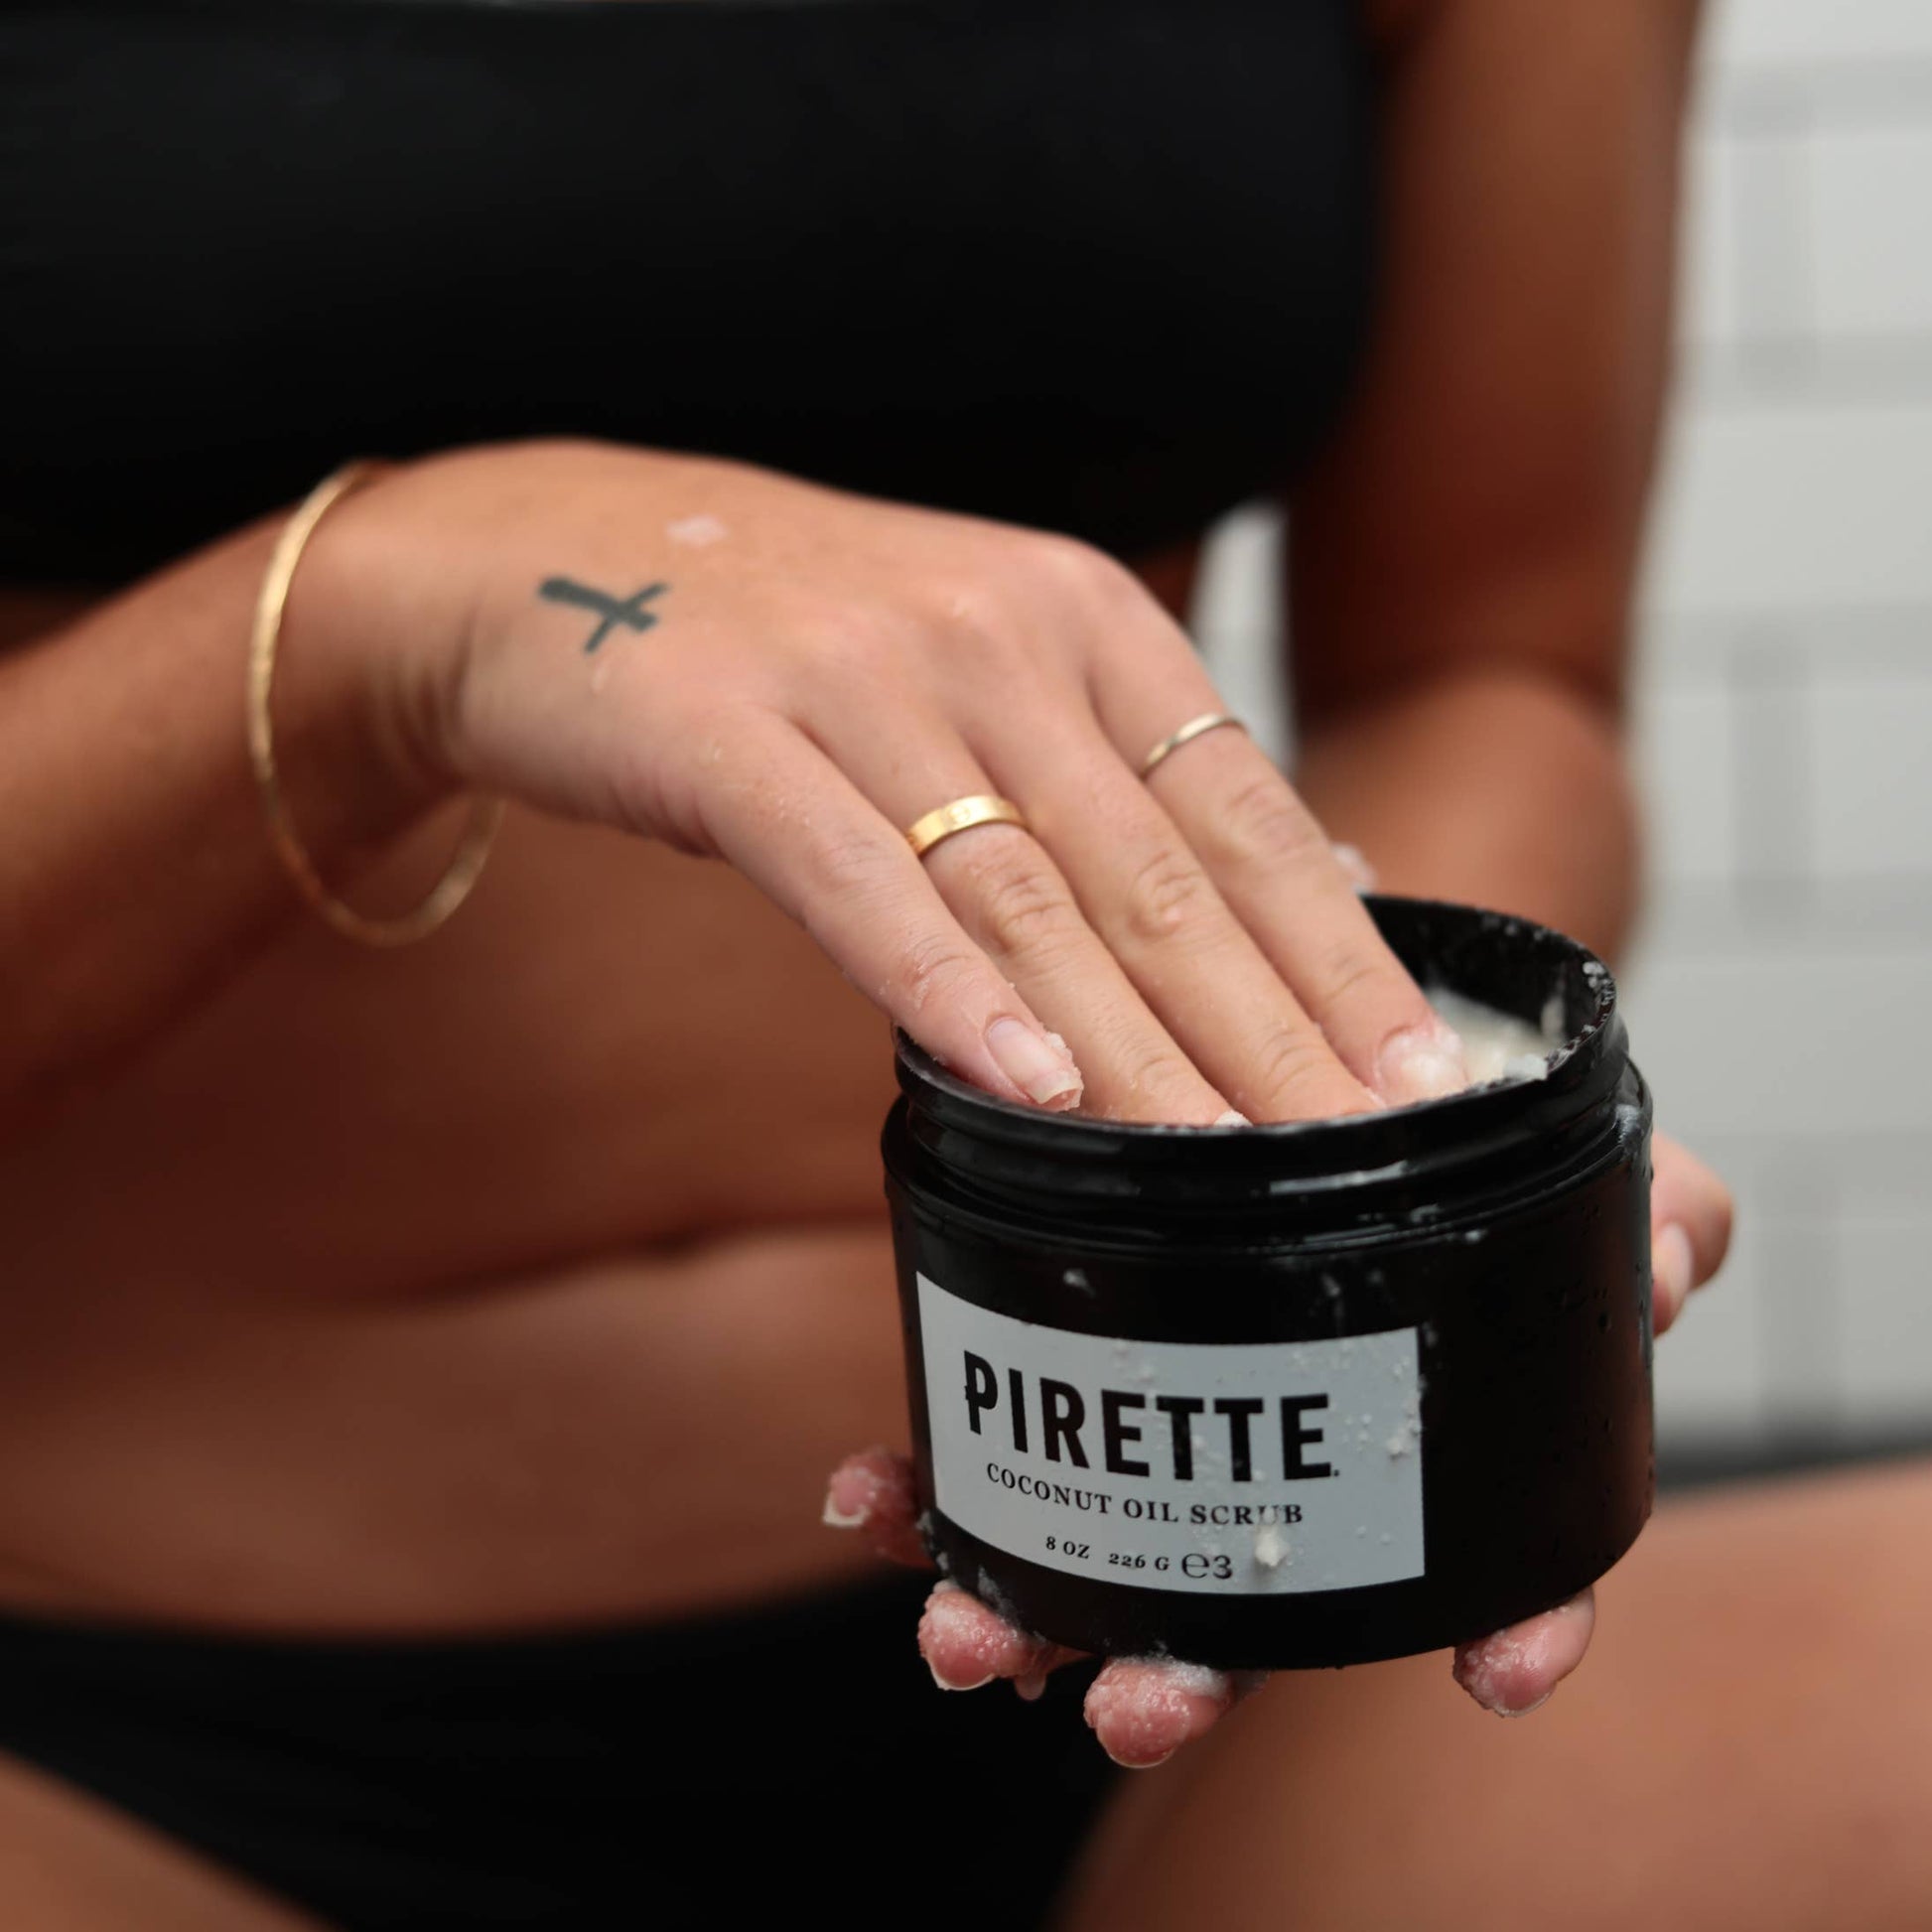 Pirette-Scrub-Product-Use2Pirette - Coconut Oil Scrub - MClose